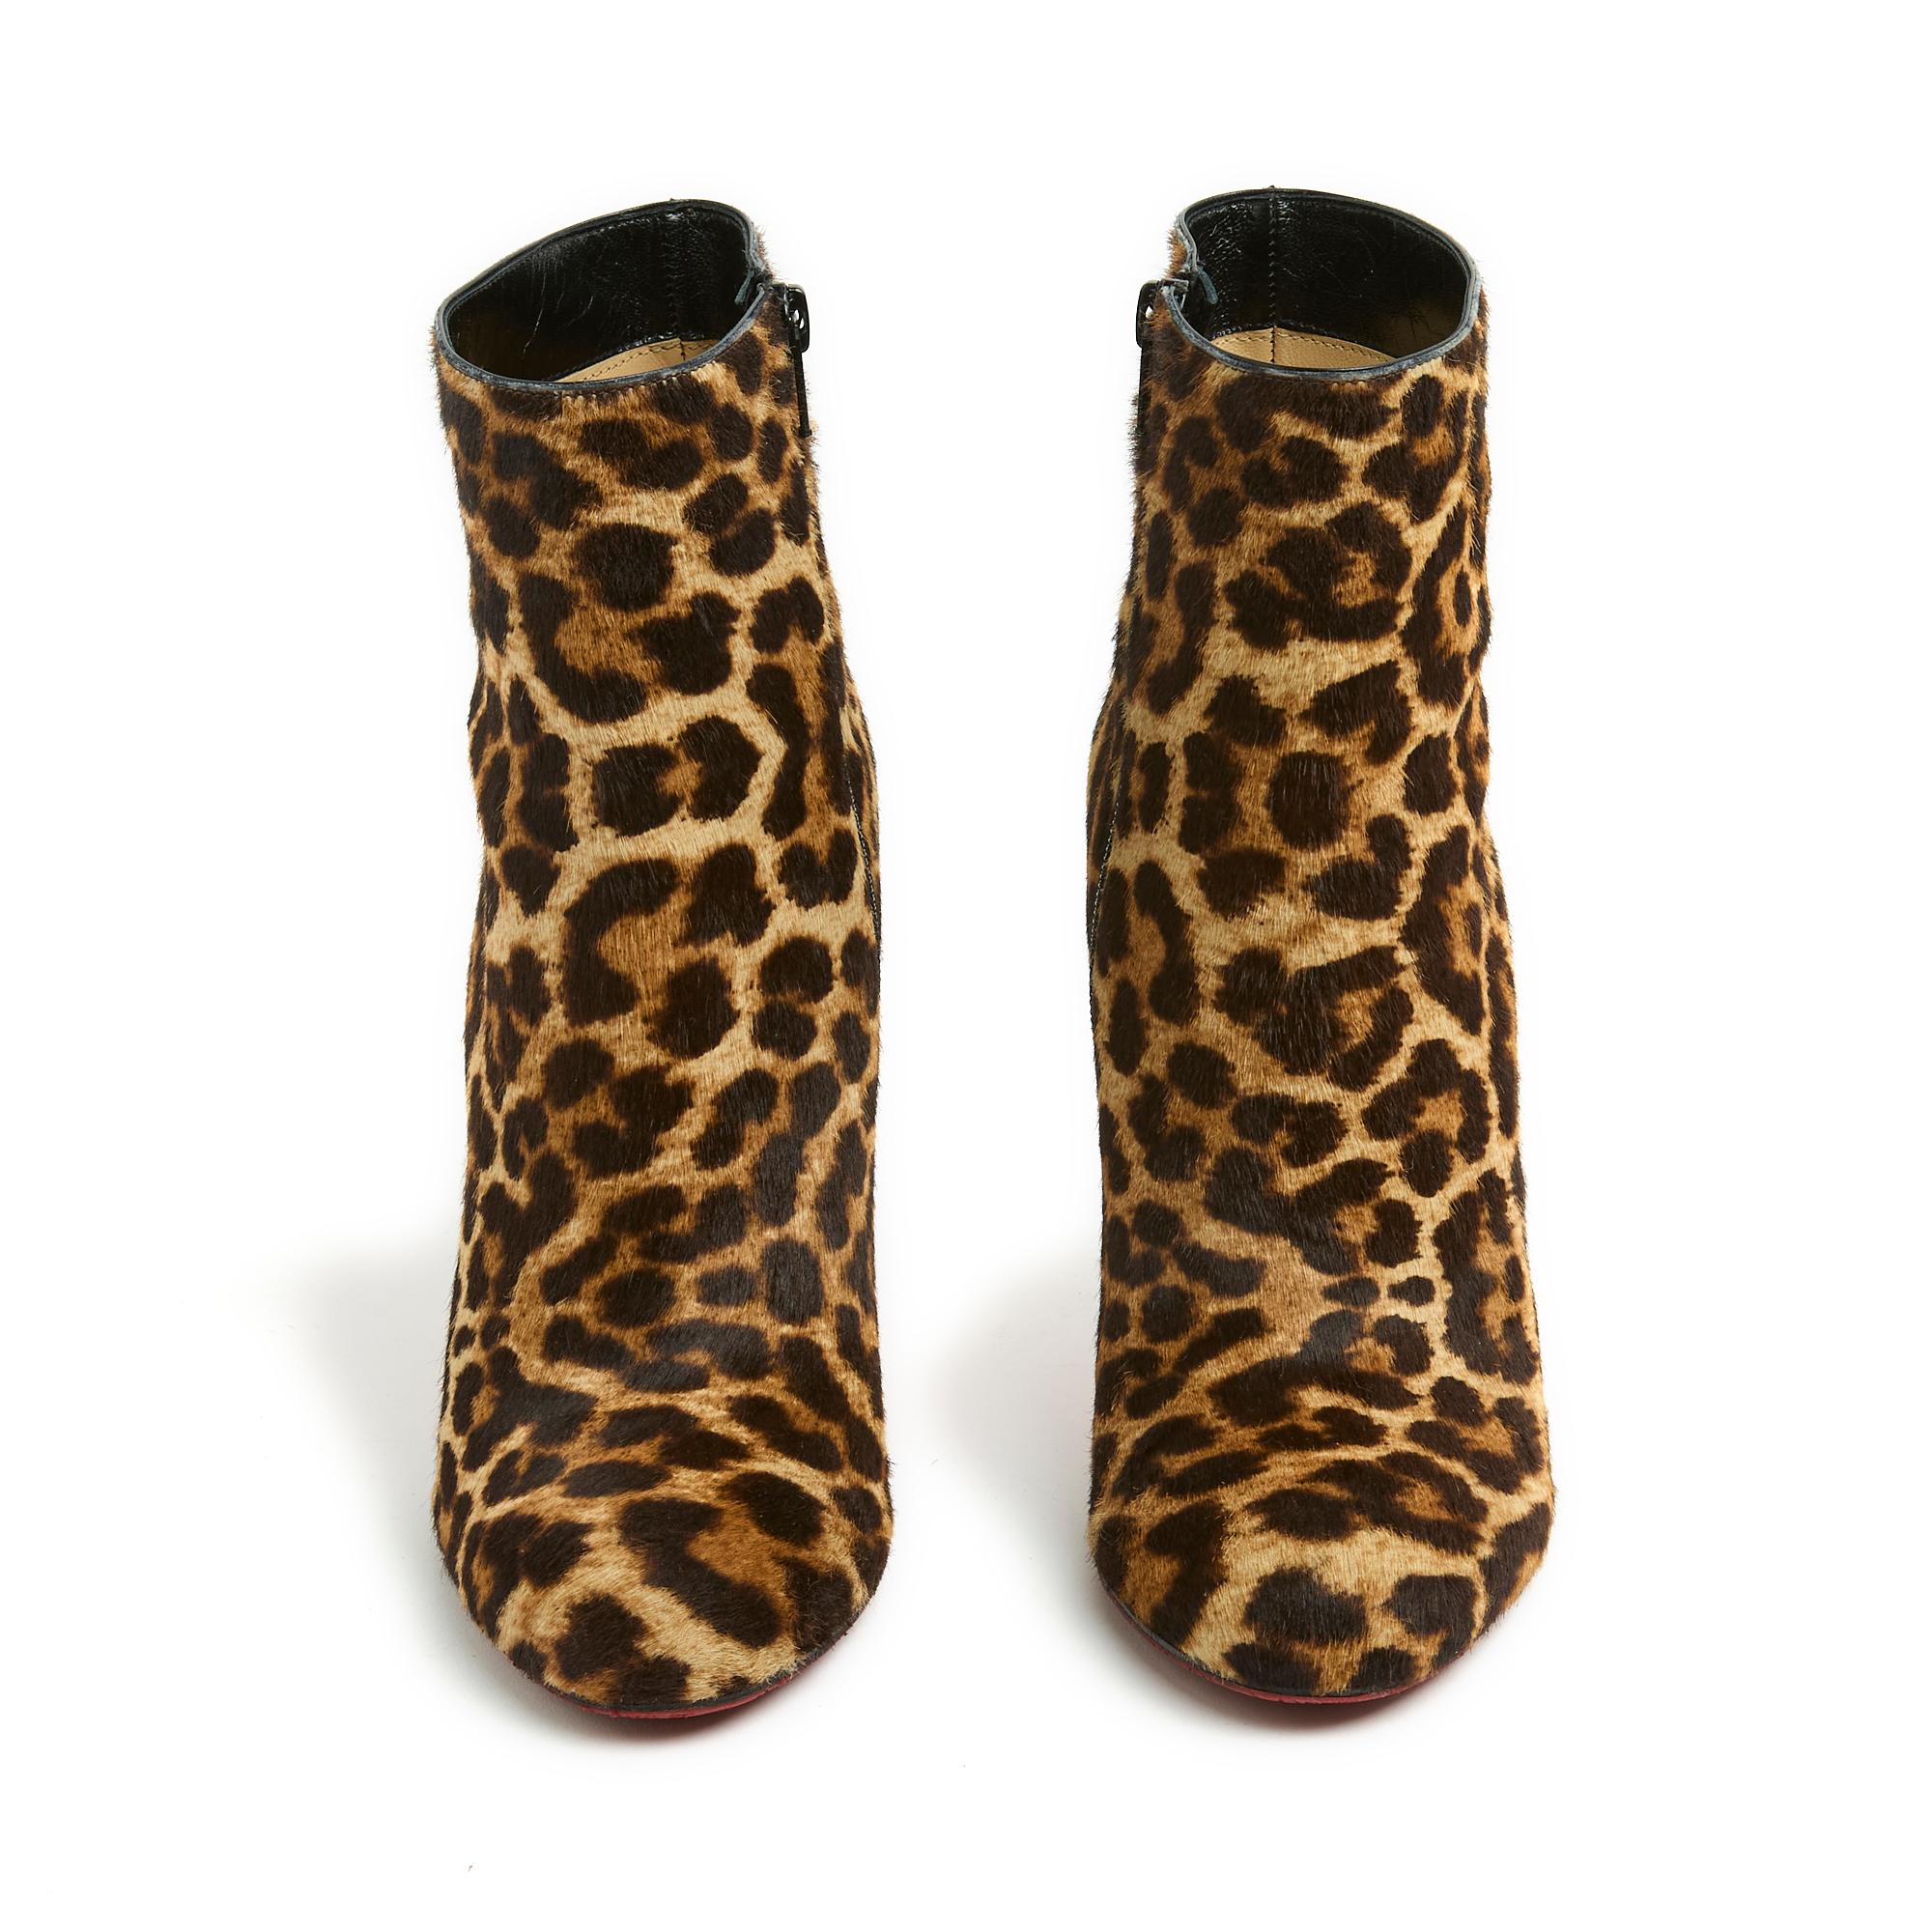 Bottines Christian Louboutin en veau façon poney imprimé léopard, bout arrondi (avec mini plateforme cachée à l'avant), talon aiguille, fermeture zippée sur le côté intérieur de la chaussure. Taille EU39 ou UK 6 et US8.5, talon 11 cm, semelle